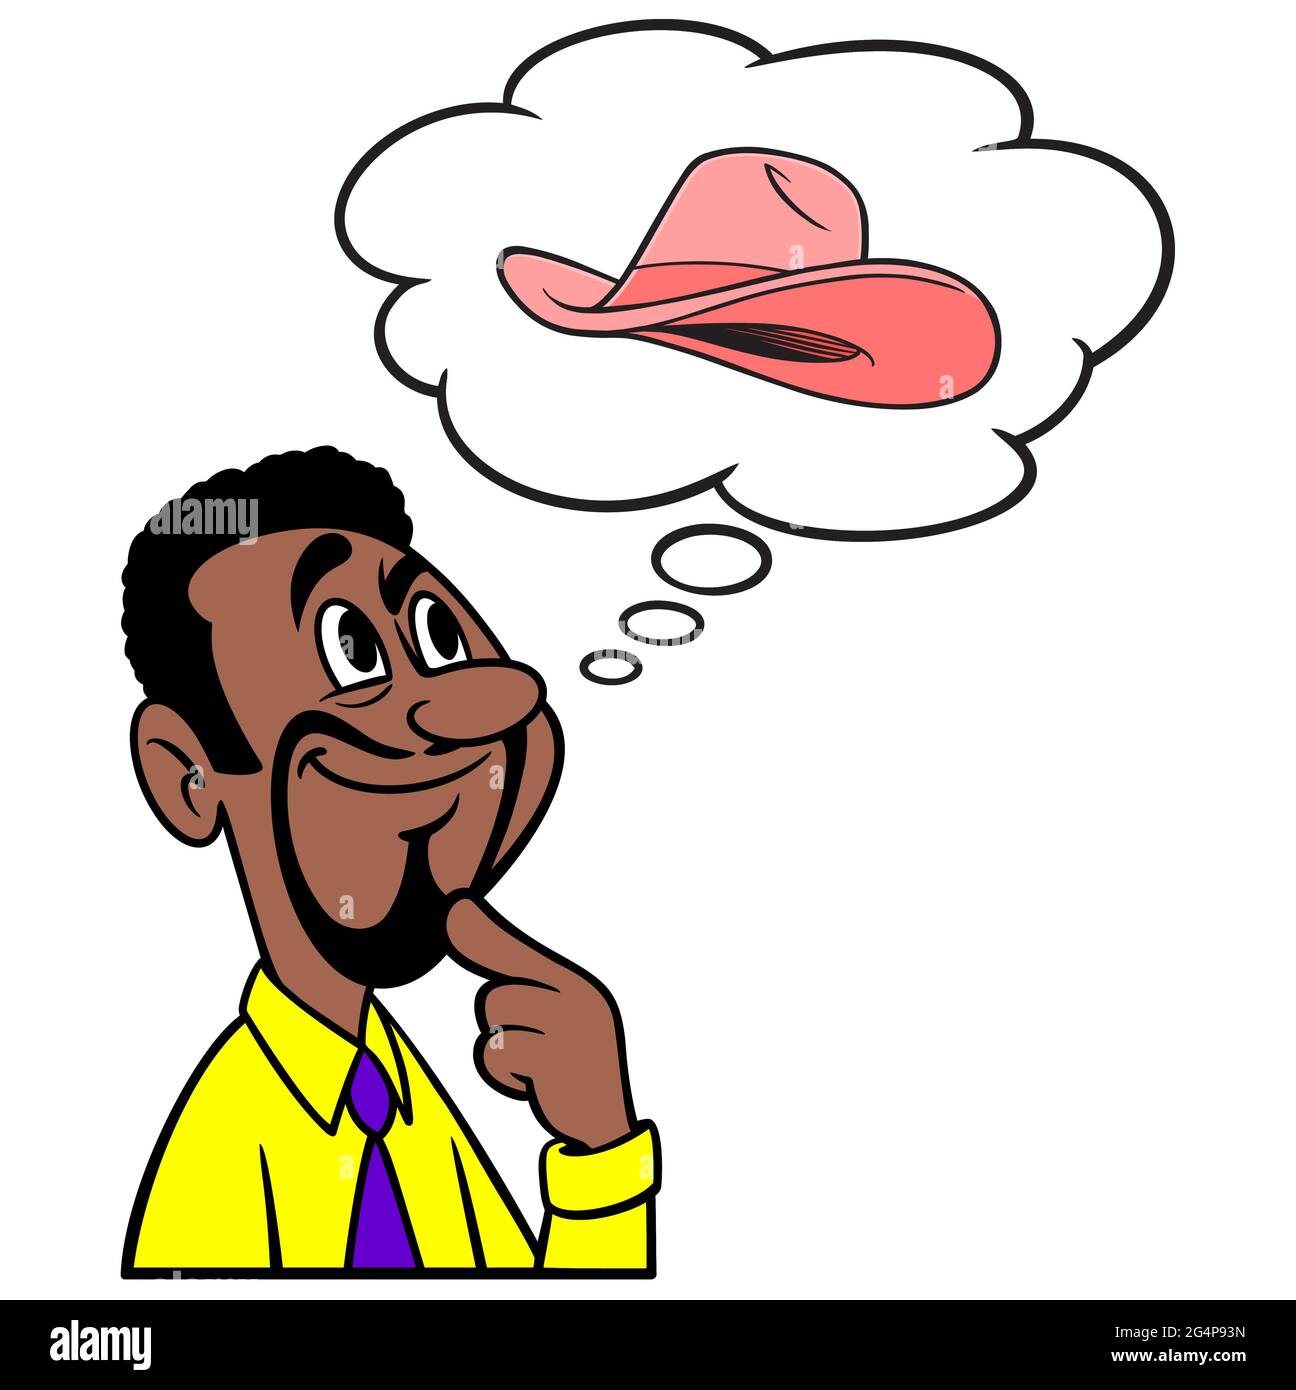 Mann, der an Cowgirl Hut denkt - EINE Cartoon-Illustration eines Mannes, der an einen Cowgirl Hut denkt. Stock Vektor